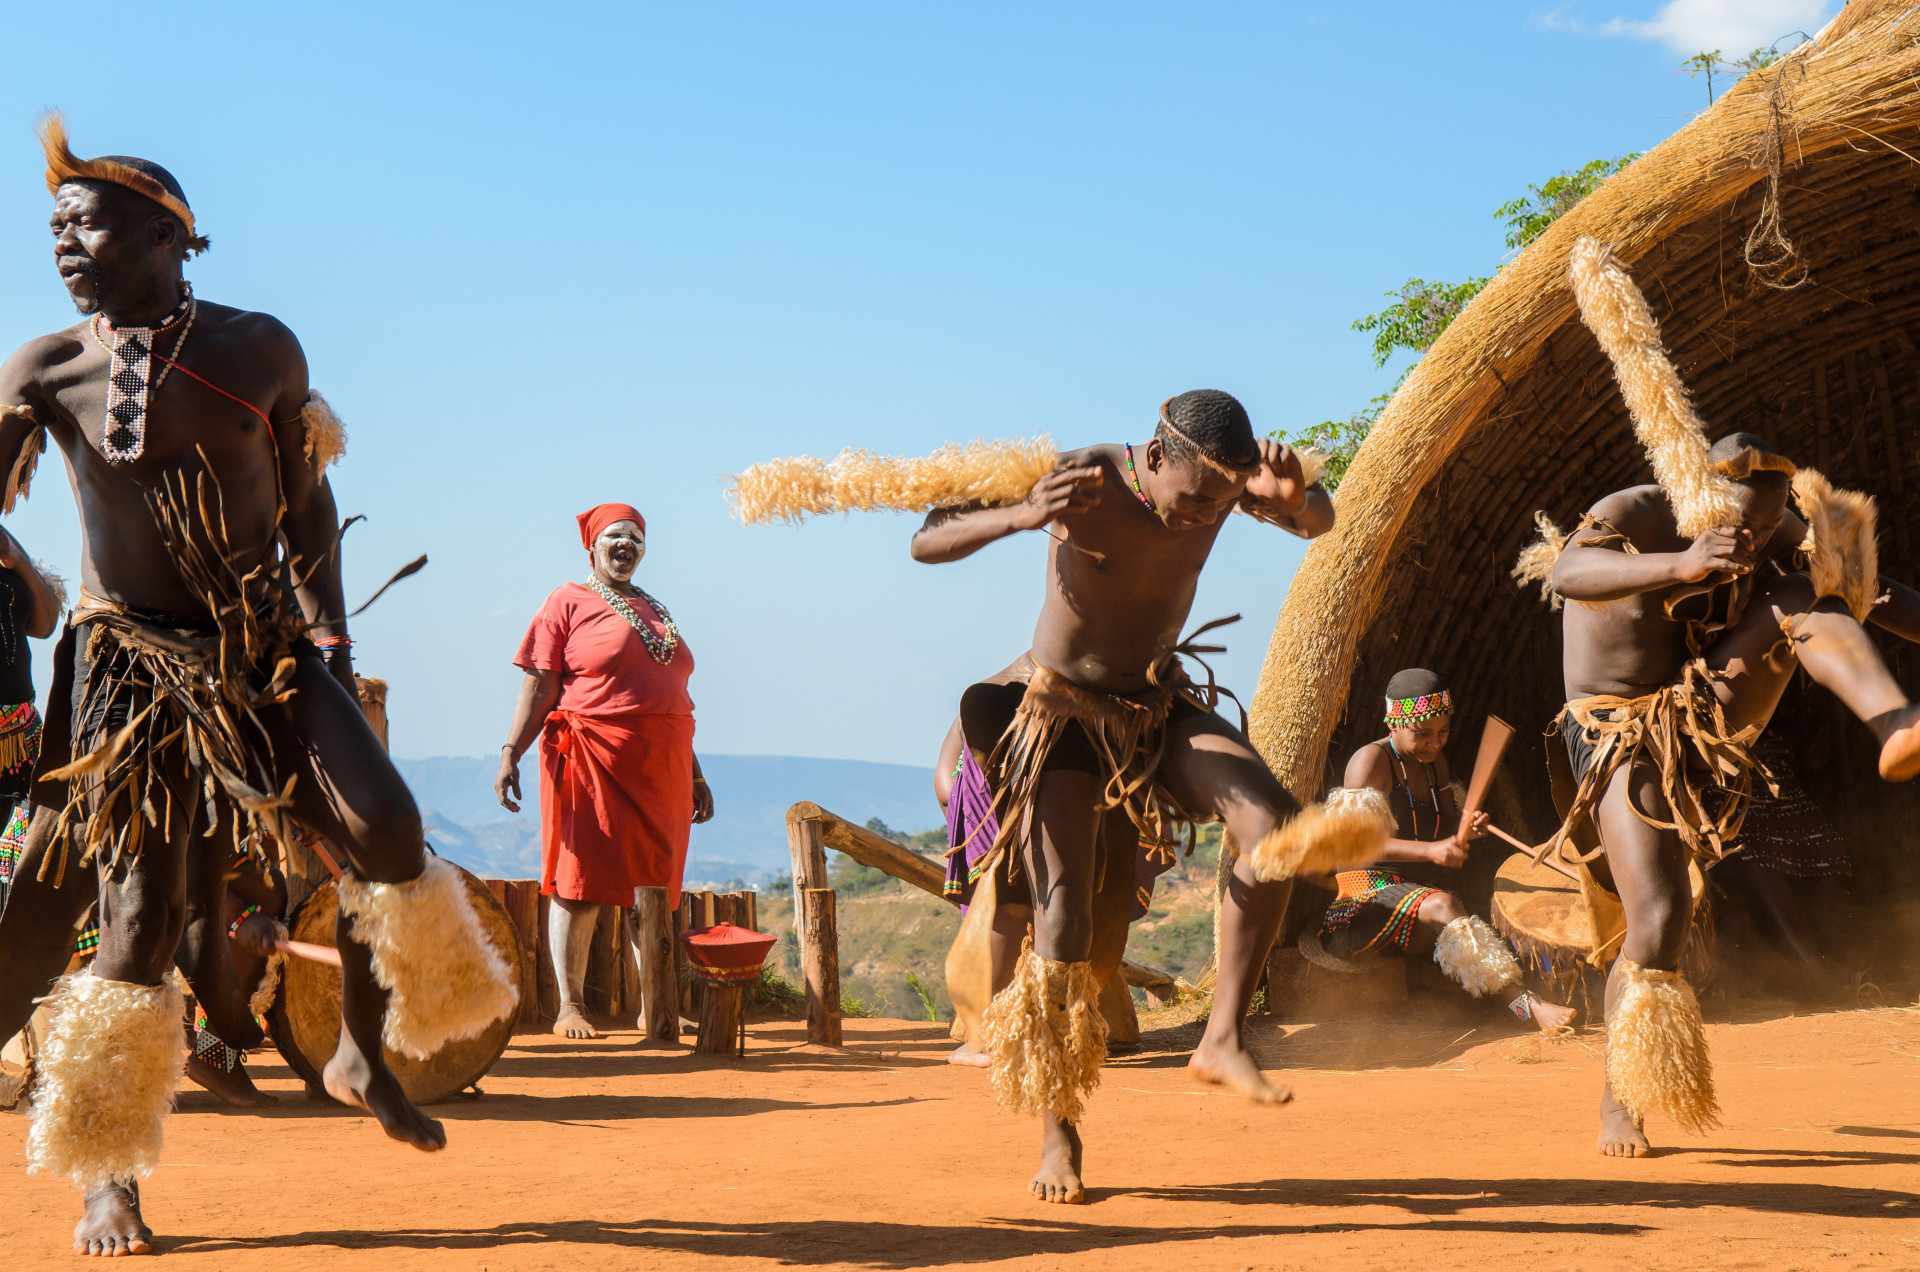 À 35 km de Durbun, vous trouverez le village de PheZulu, où il est possible de se plonger dans la culture zouloue et de regarder les danseurs zoulous dans leur habit traditionnel.<p><a href="https://www.msn.com/fr-fr/community/channel/vid-7xx8mnucu55yw63we9va2gwr7uihbxwc68fxqp25x6tg4ftibpra?cvid=94631541bc0f4f89bfd59158d696ad7e">Suivez-nous et accédez tous les jours à du contenu exclusif</a></p>